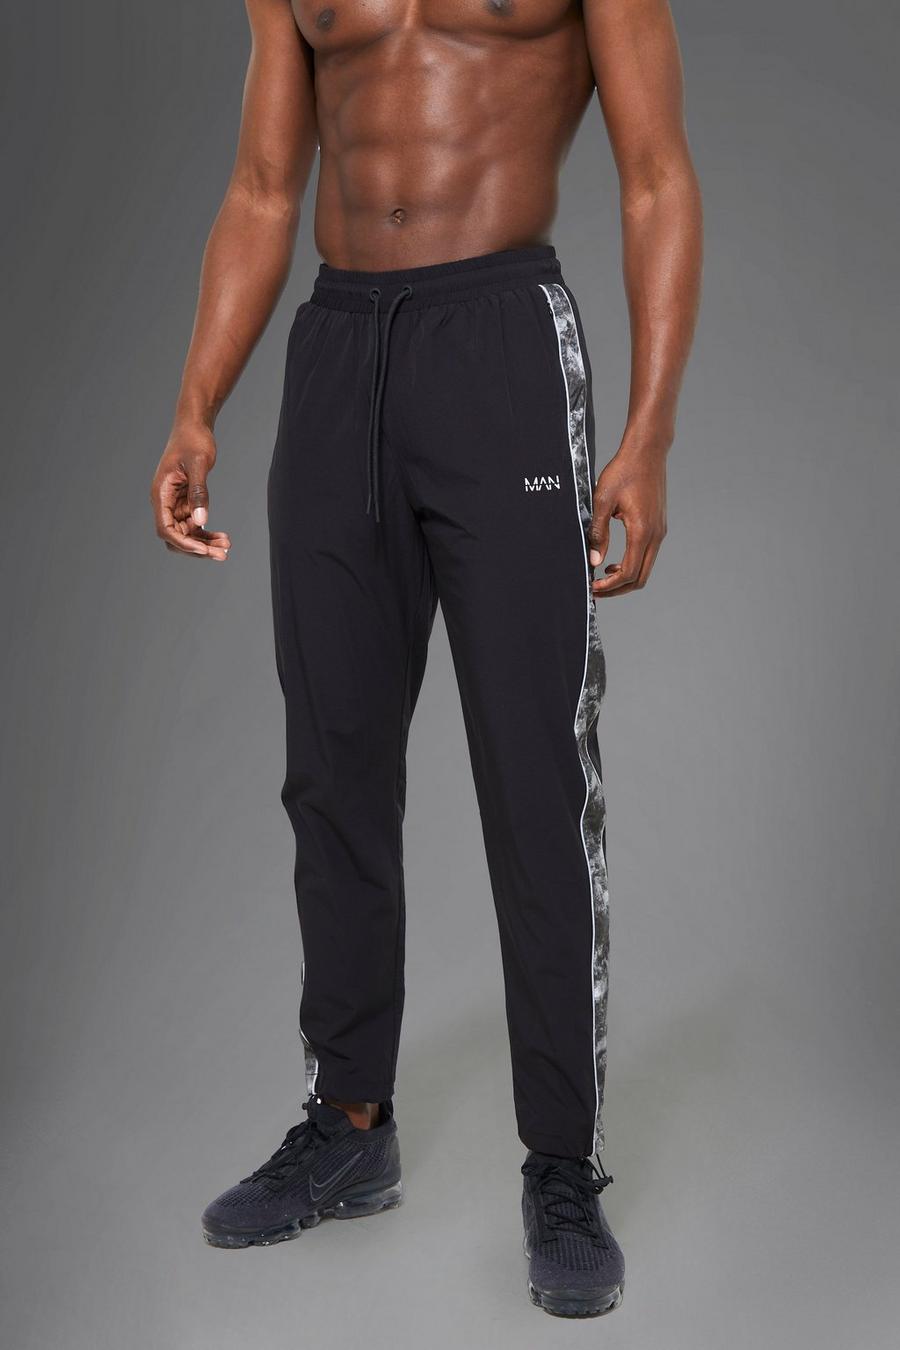 שחור nero מכנסי ריצה ספורטיביים עם פאנל בדוגמה אבסטרקטית ושרוך בקרסול Man